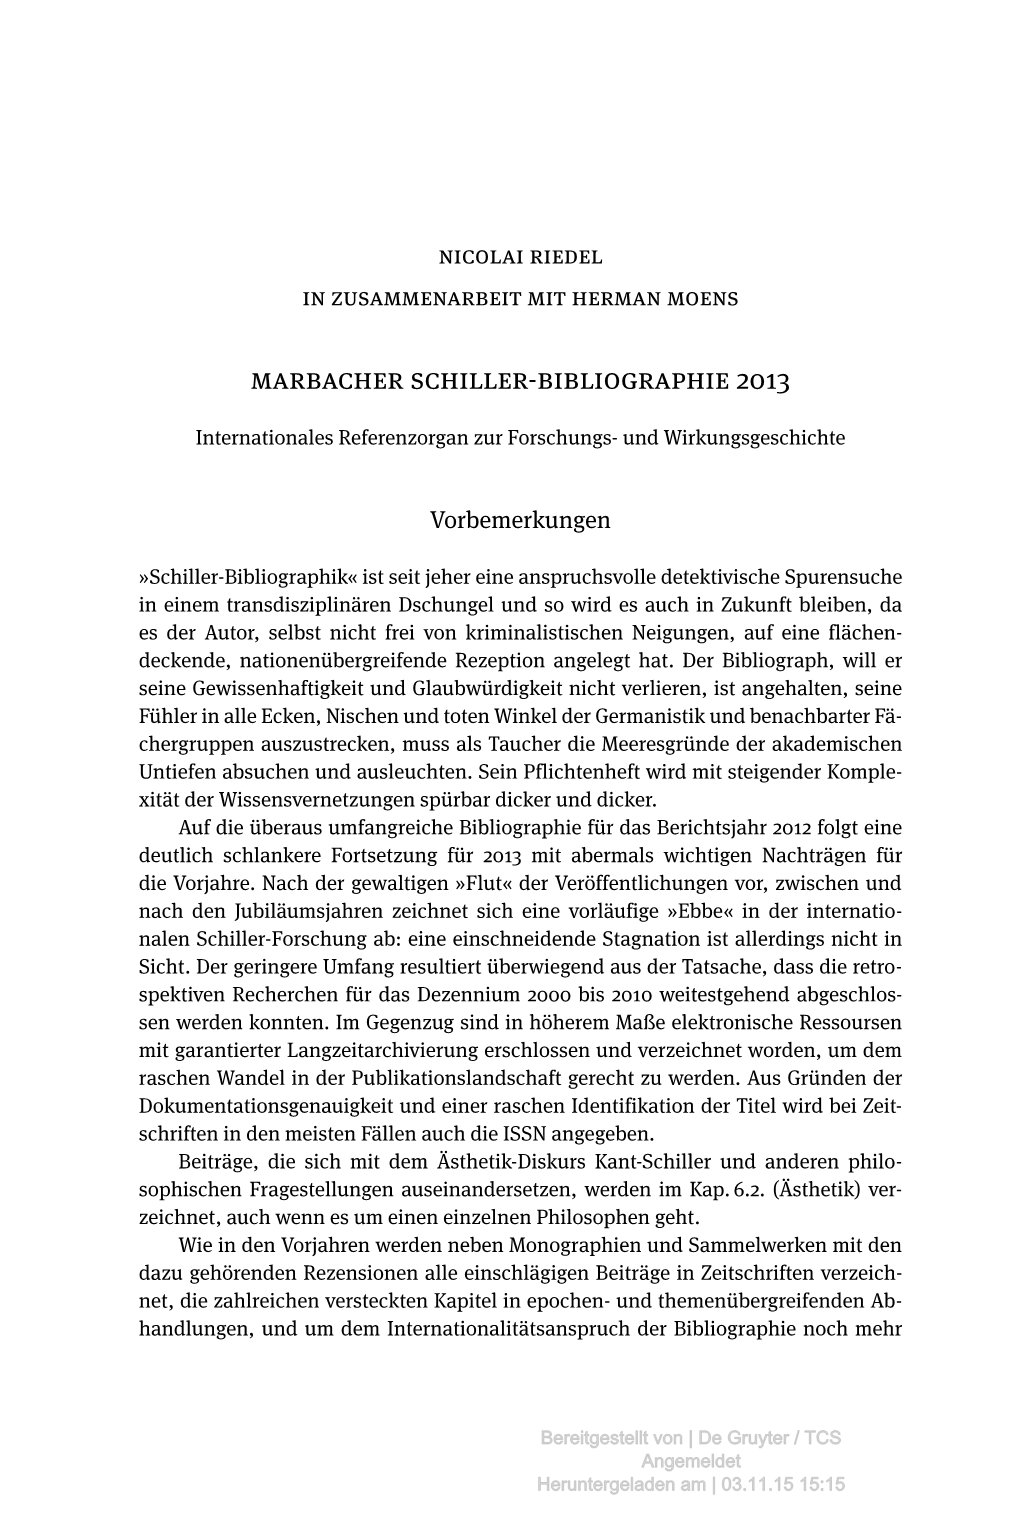 Marbacher Schiller-Bibliographie 2013